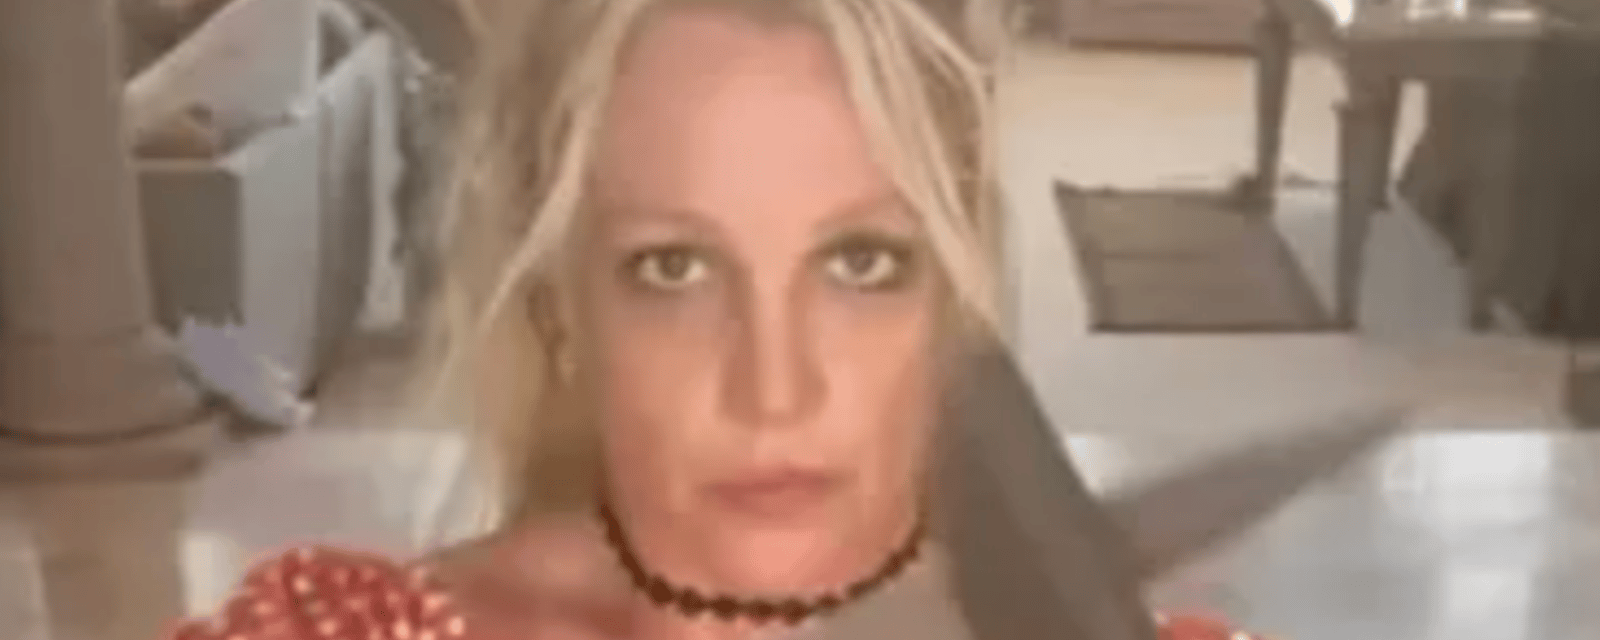 Les policiers rendent visite à Britney Spears suite à une troublante vidéo qu'elle a publiée